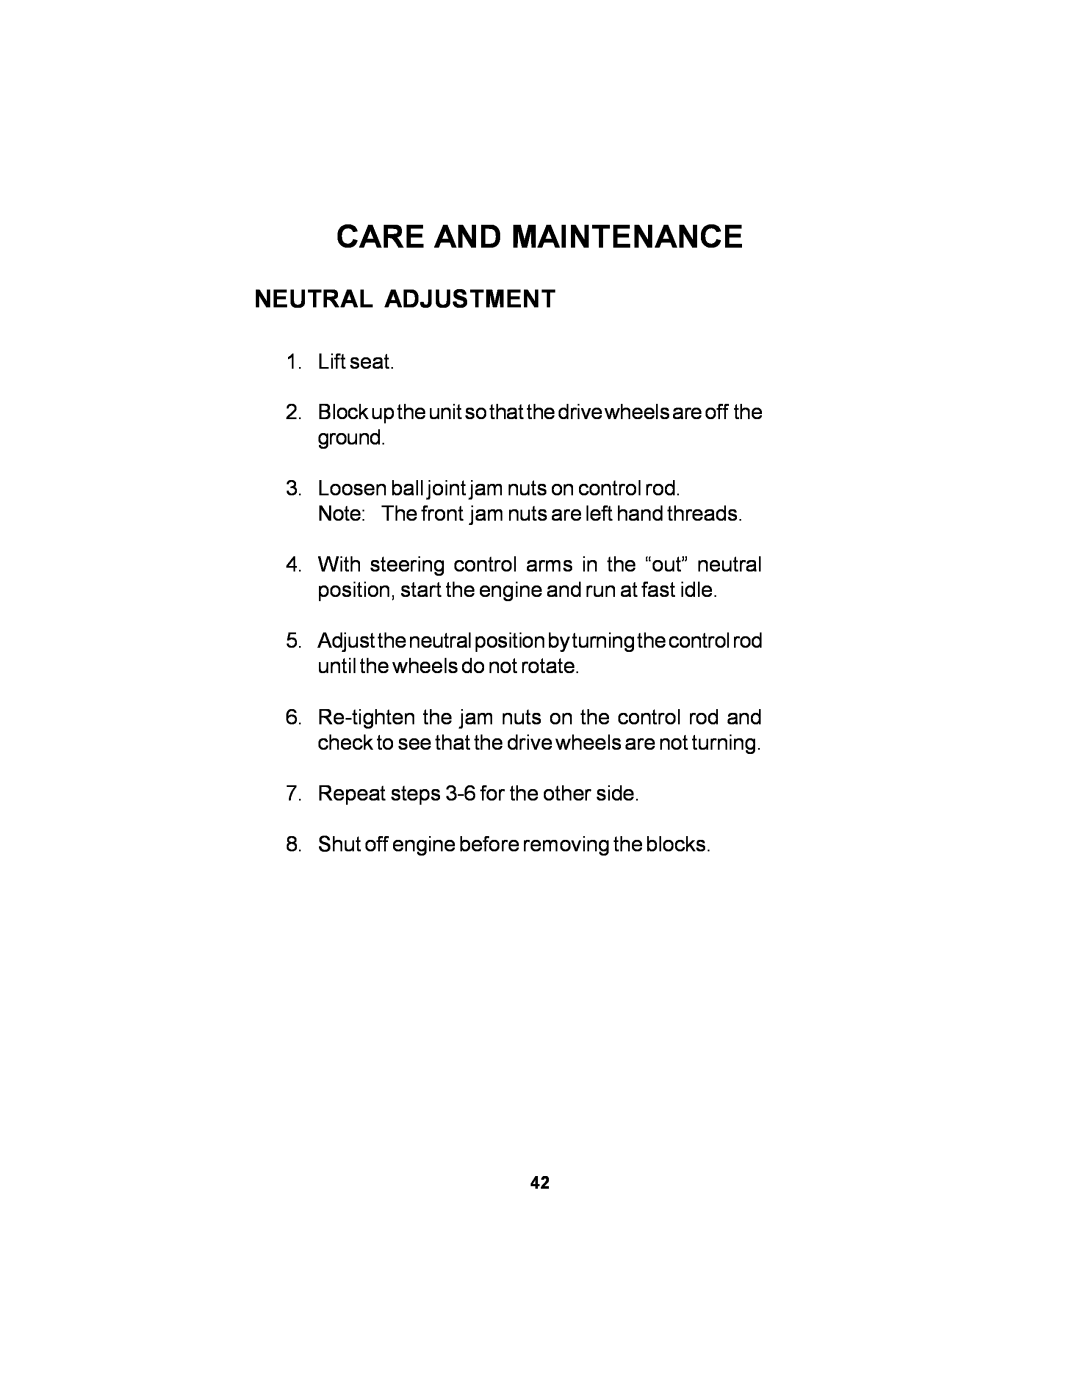 Dixon ELS 60 manual Neutral Adjustment, Care And Maintenance 